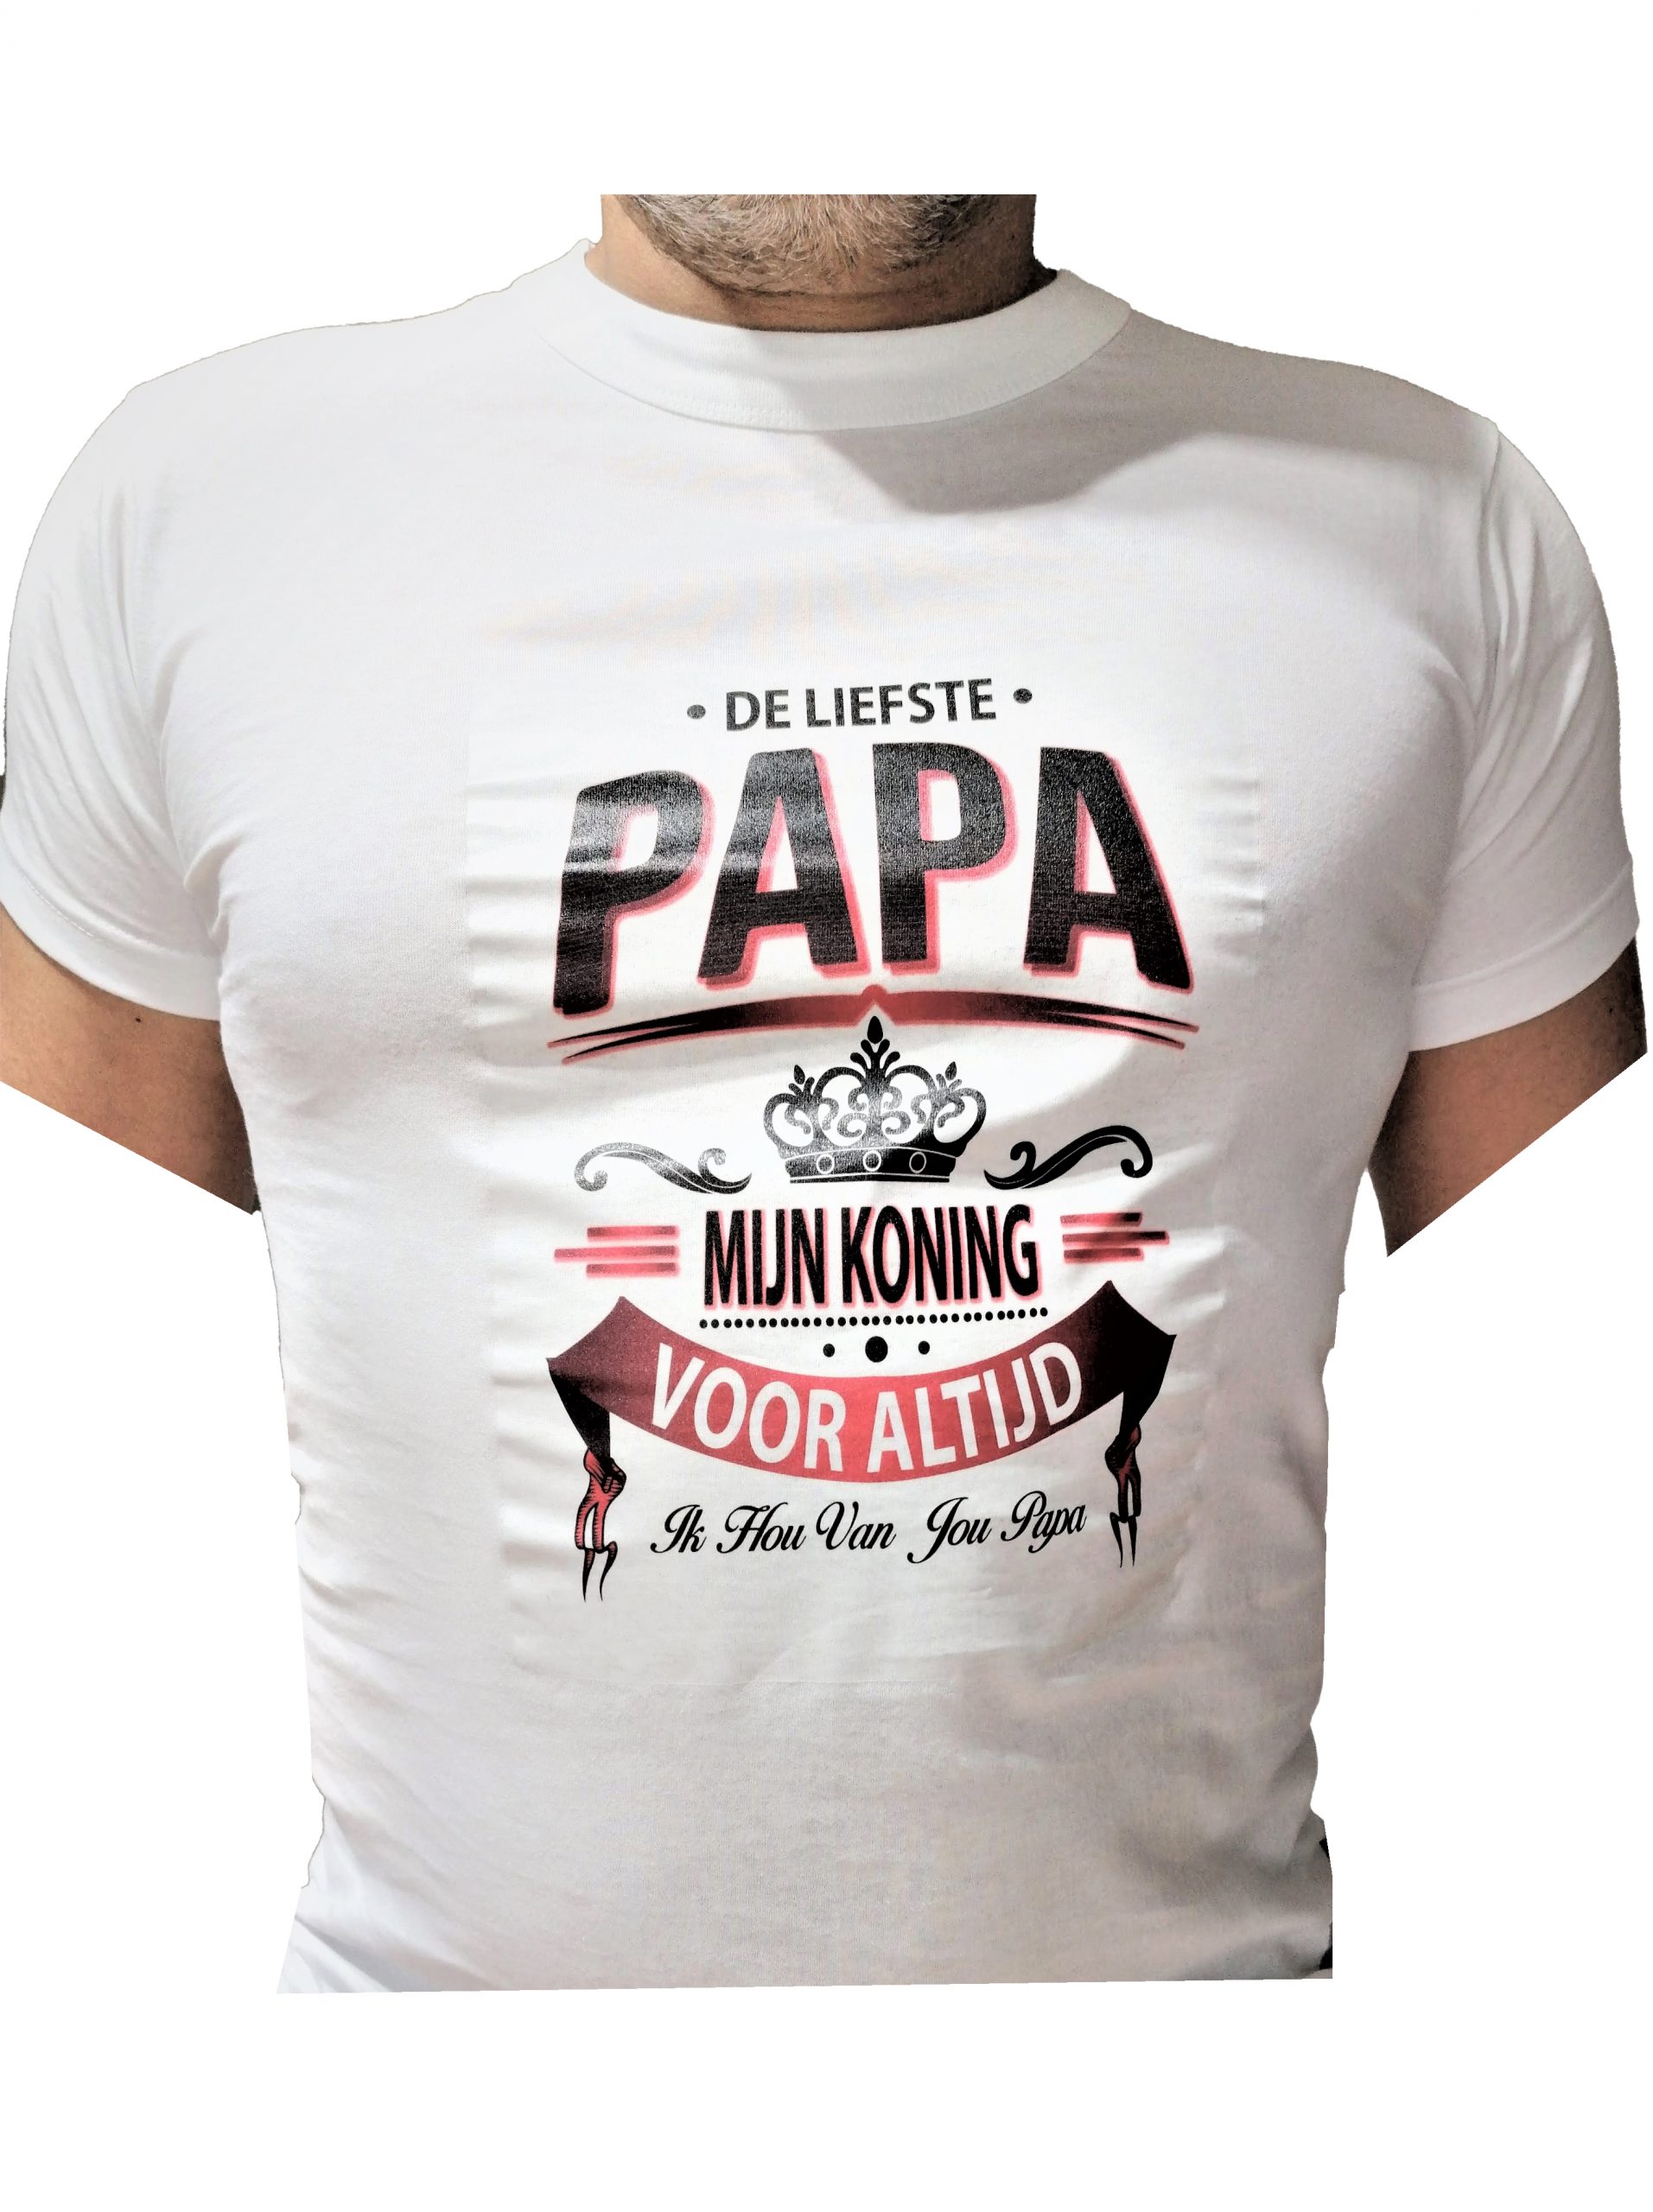 Archeologie samenwerken Gevoel van schuld vaderdag geschenk -De liefste papa mijn koning t-shirt- Djsa Fashion